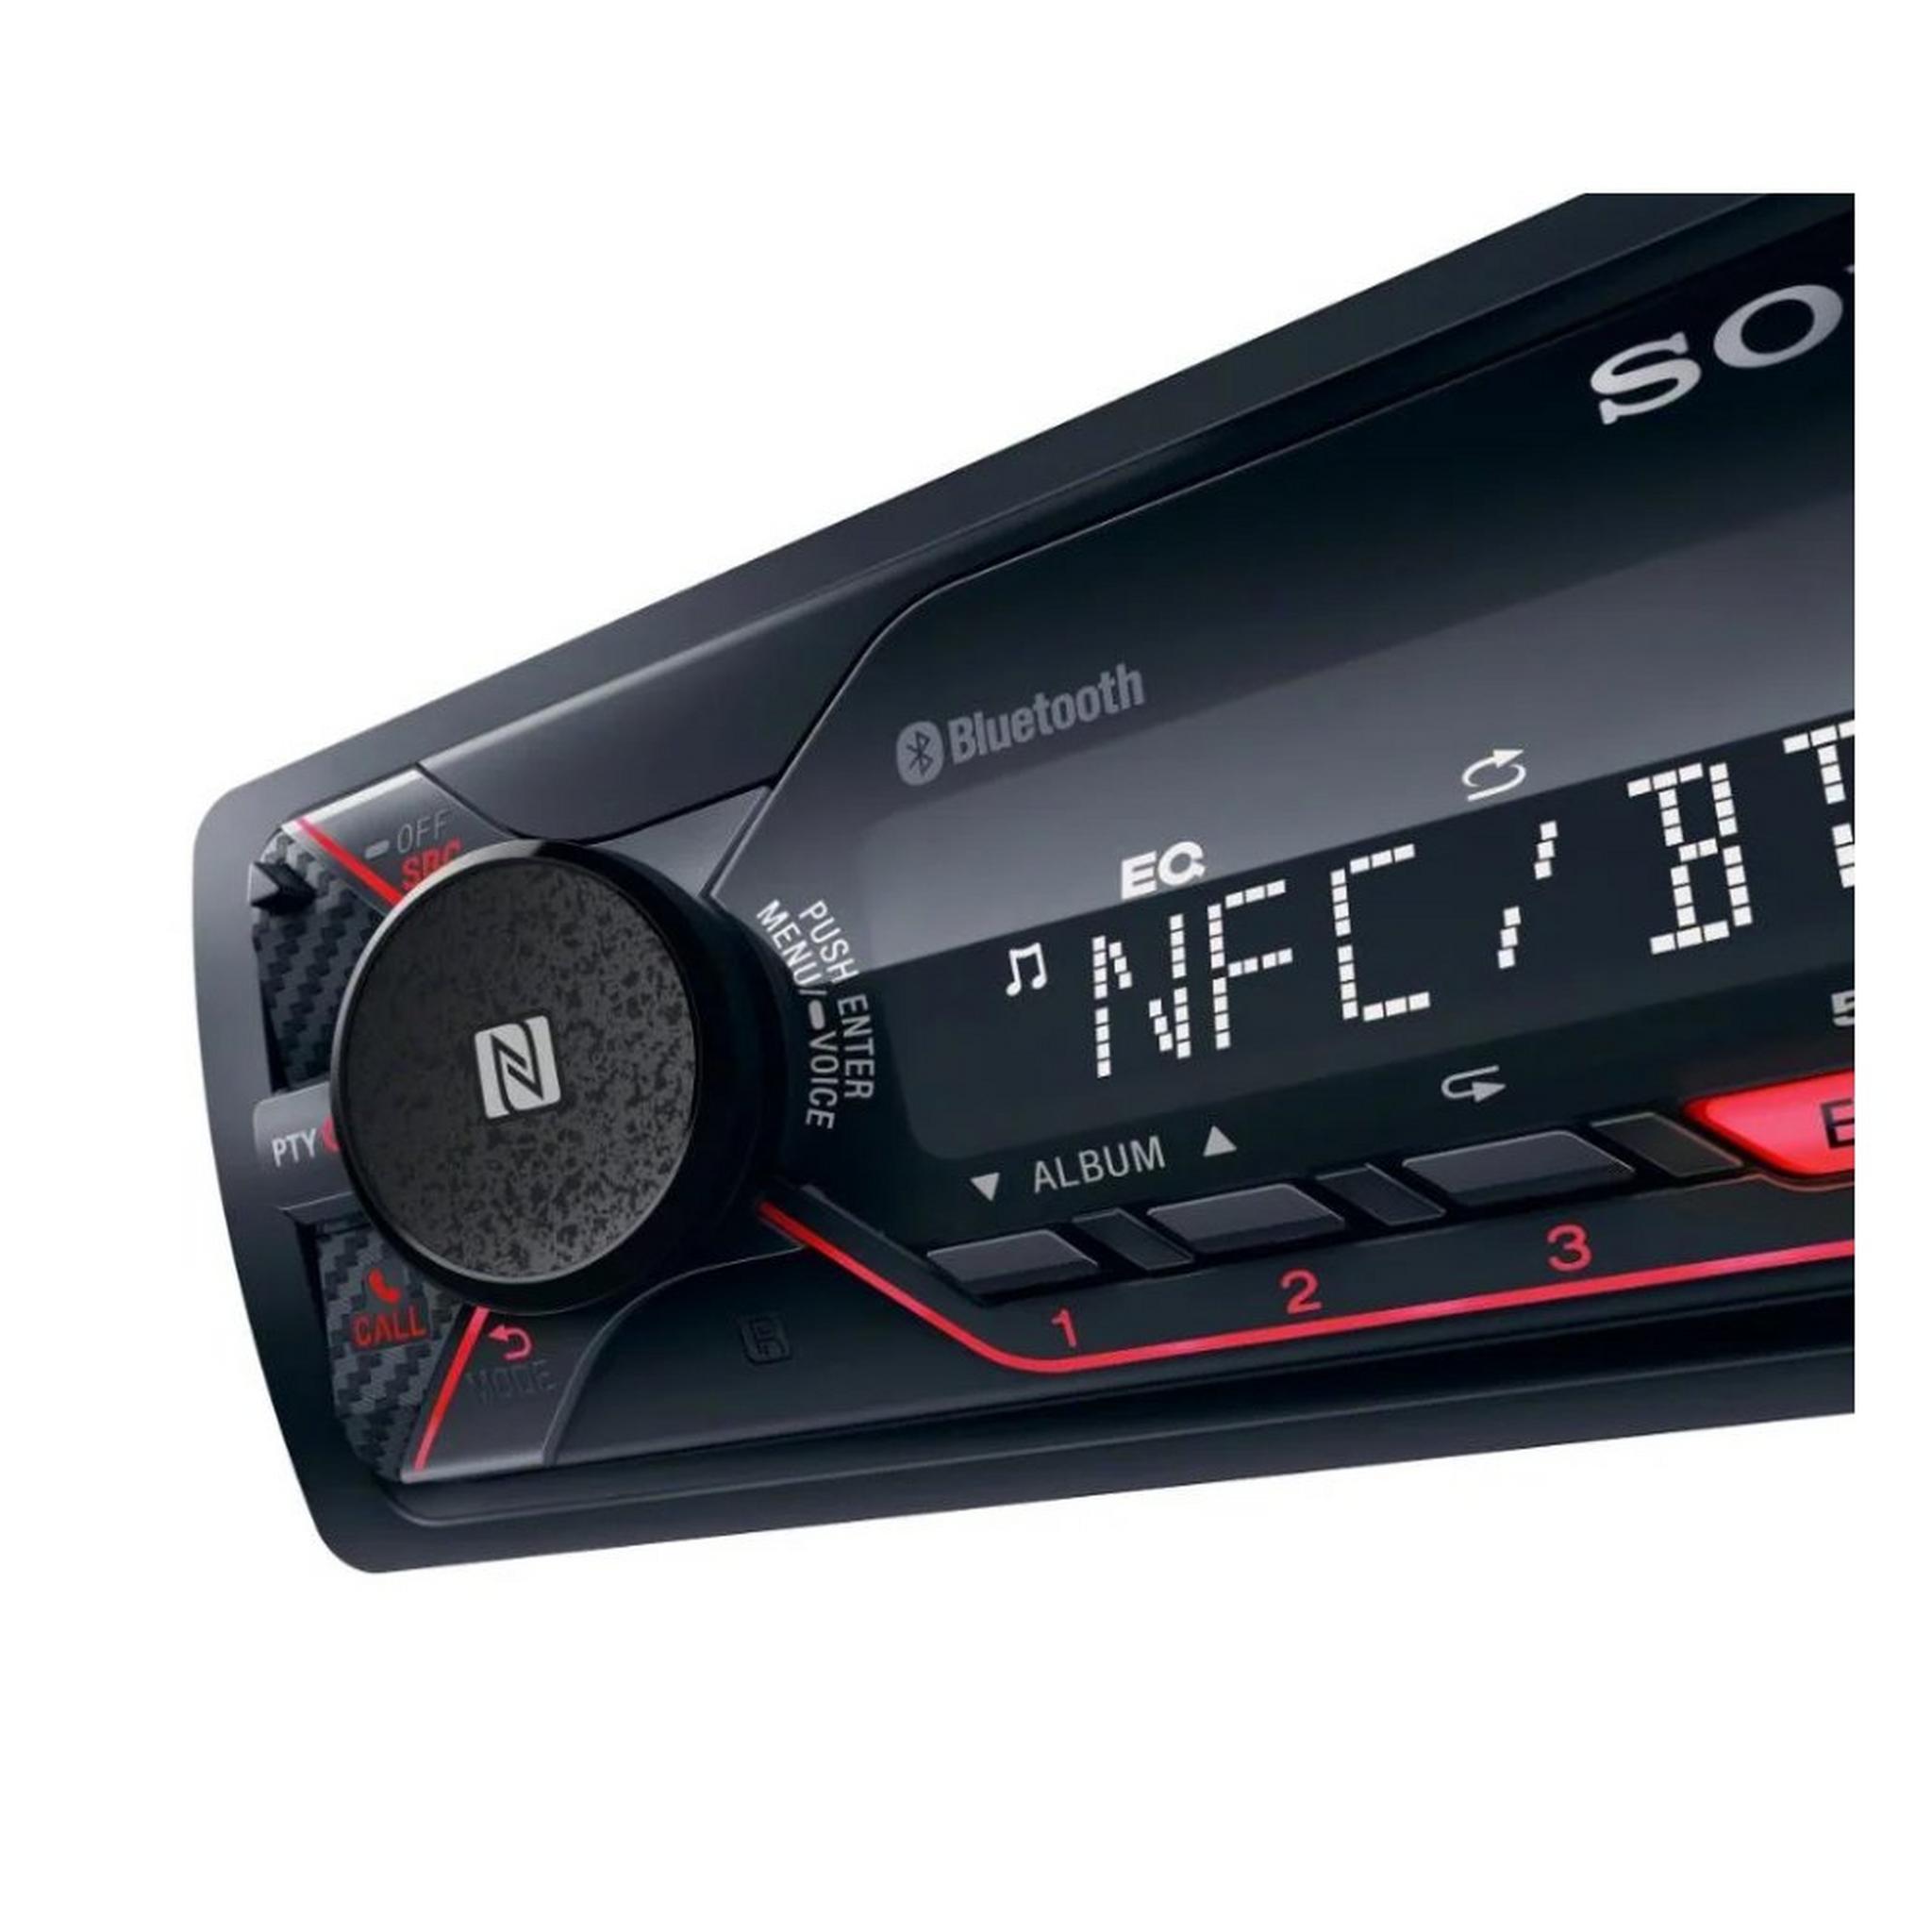 جهاز استقبال الصوت سوني للسيارة ١دين بقوة ٥٥ واط – تقنية البلوتوث - سي دي - ايه يو إكس - إس دي - يو إس بي (DSX-A410BT)